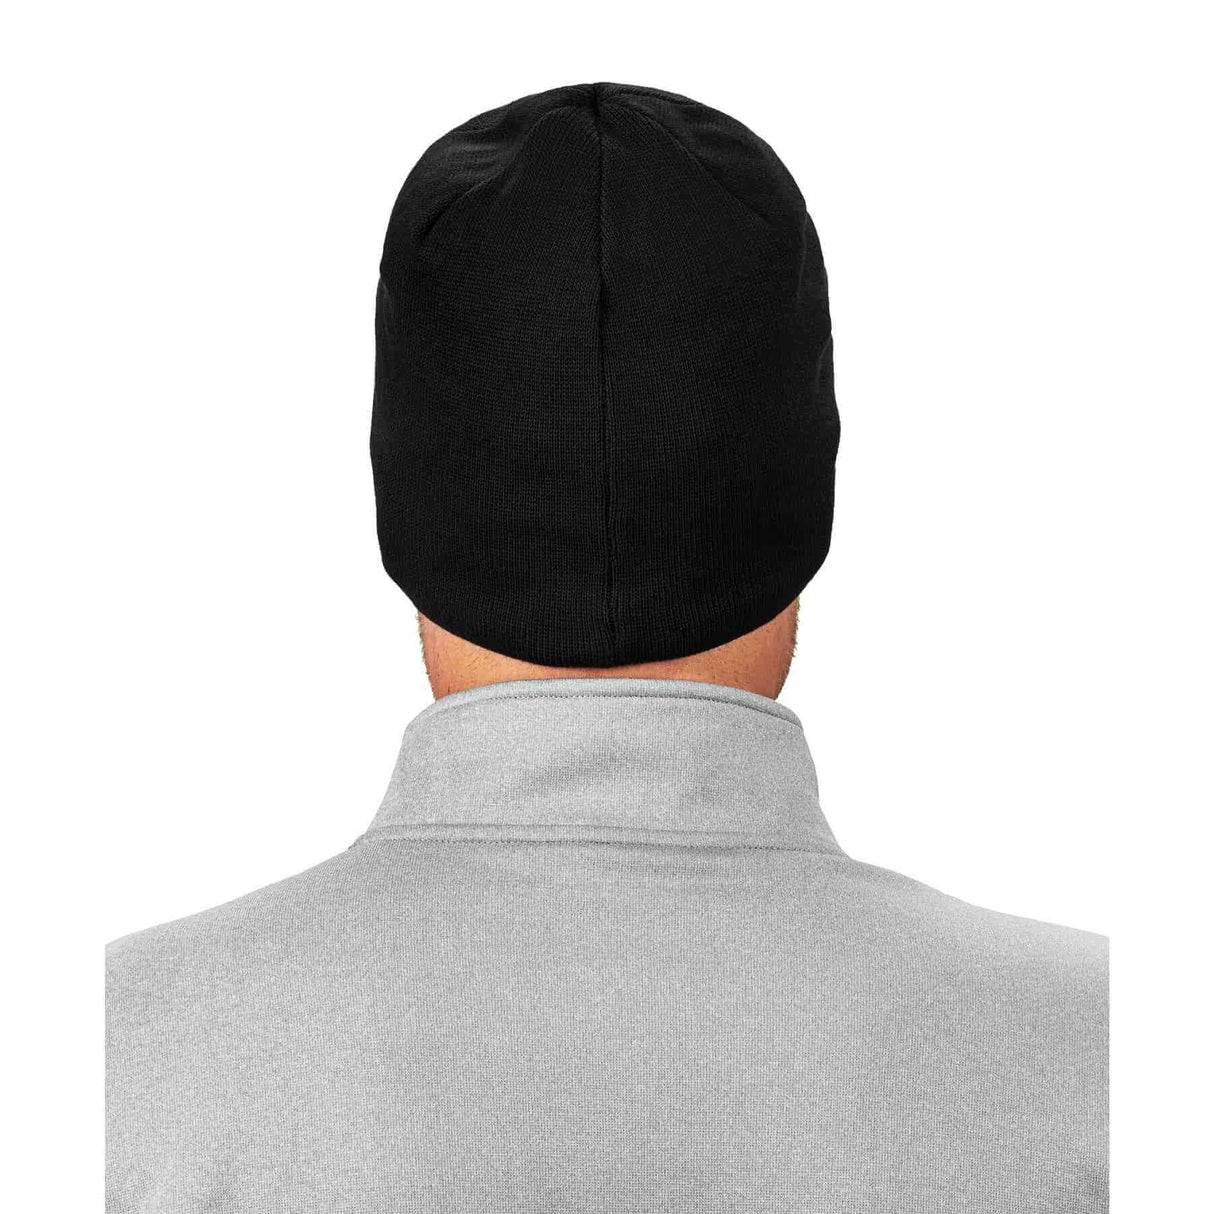 Ergodyne N-Ferno 6820 FR Knit Winter Hat